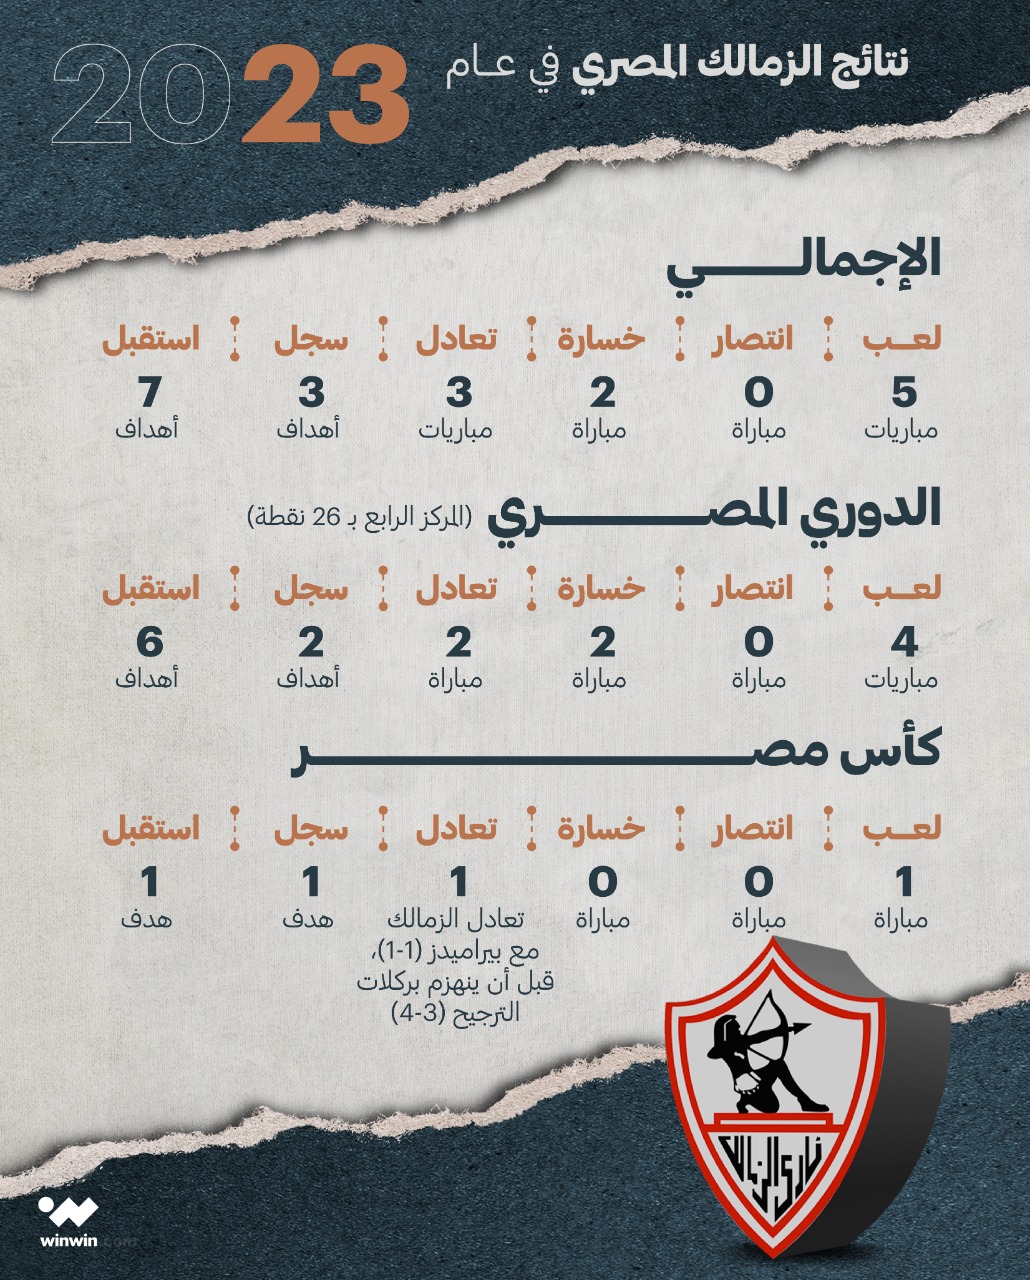 نتائج نادي الزمالك في عام 2023 بمسابقتي الدوري المصري وكأس مصر ون ون winwin